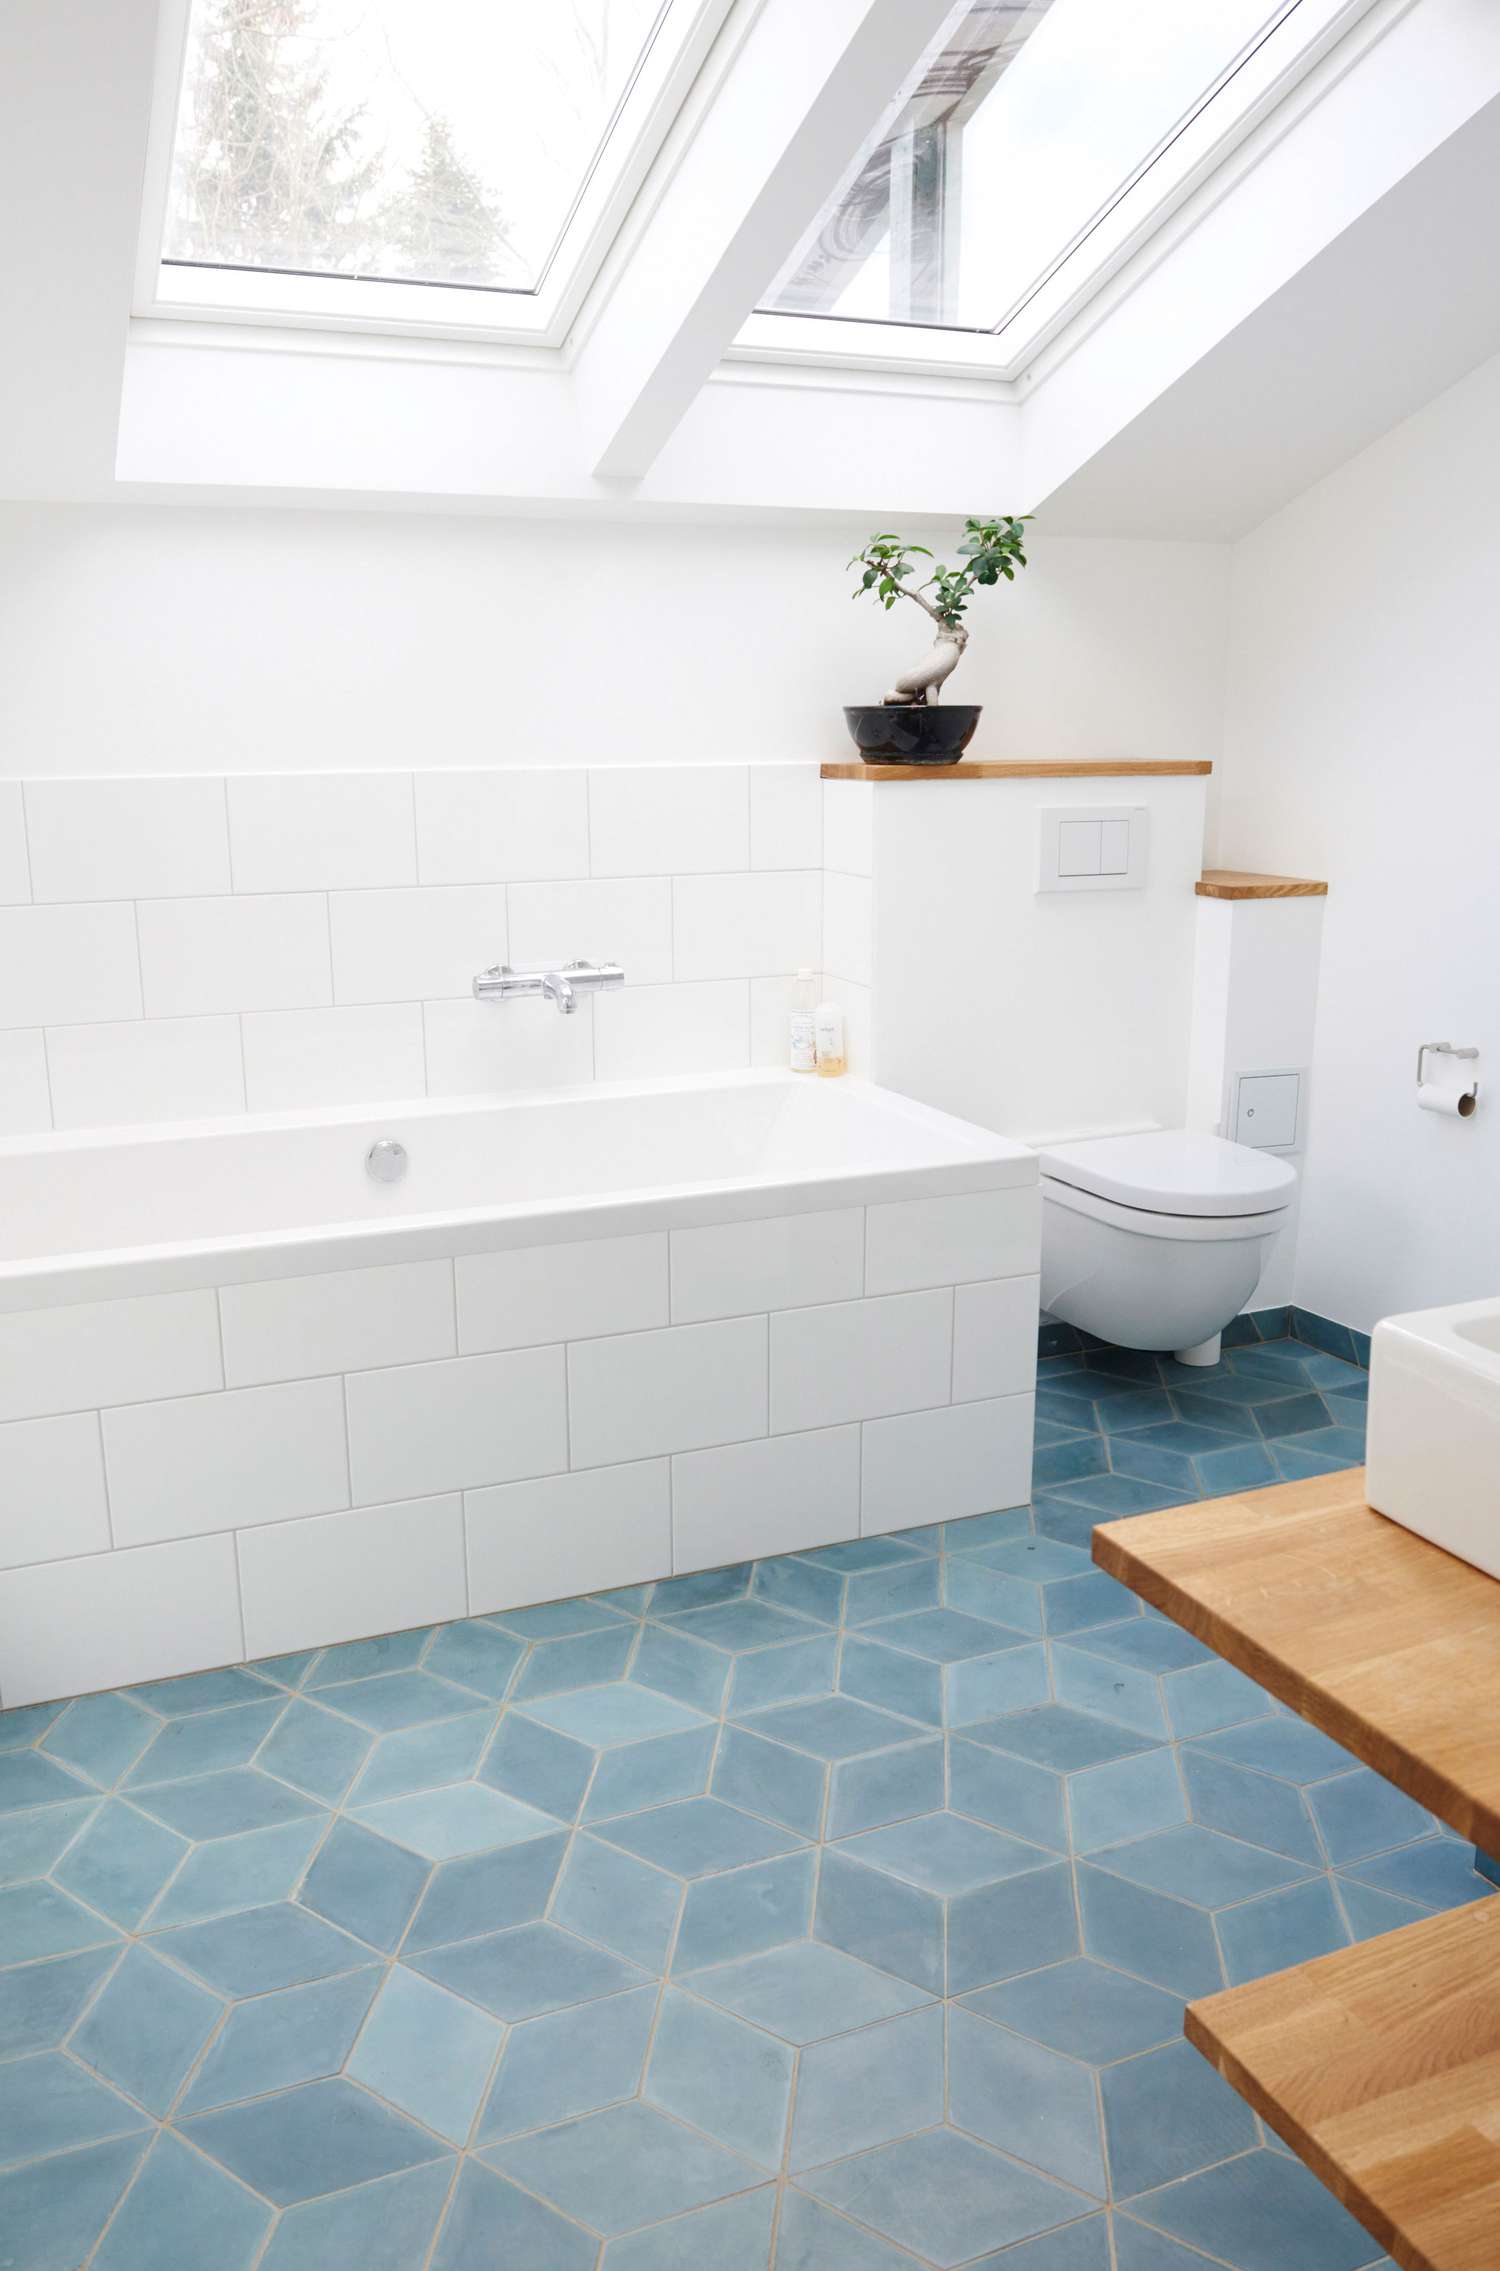 Salle de bain blanche avec carrelage bleu et accents en bois